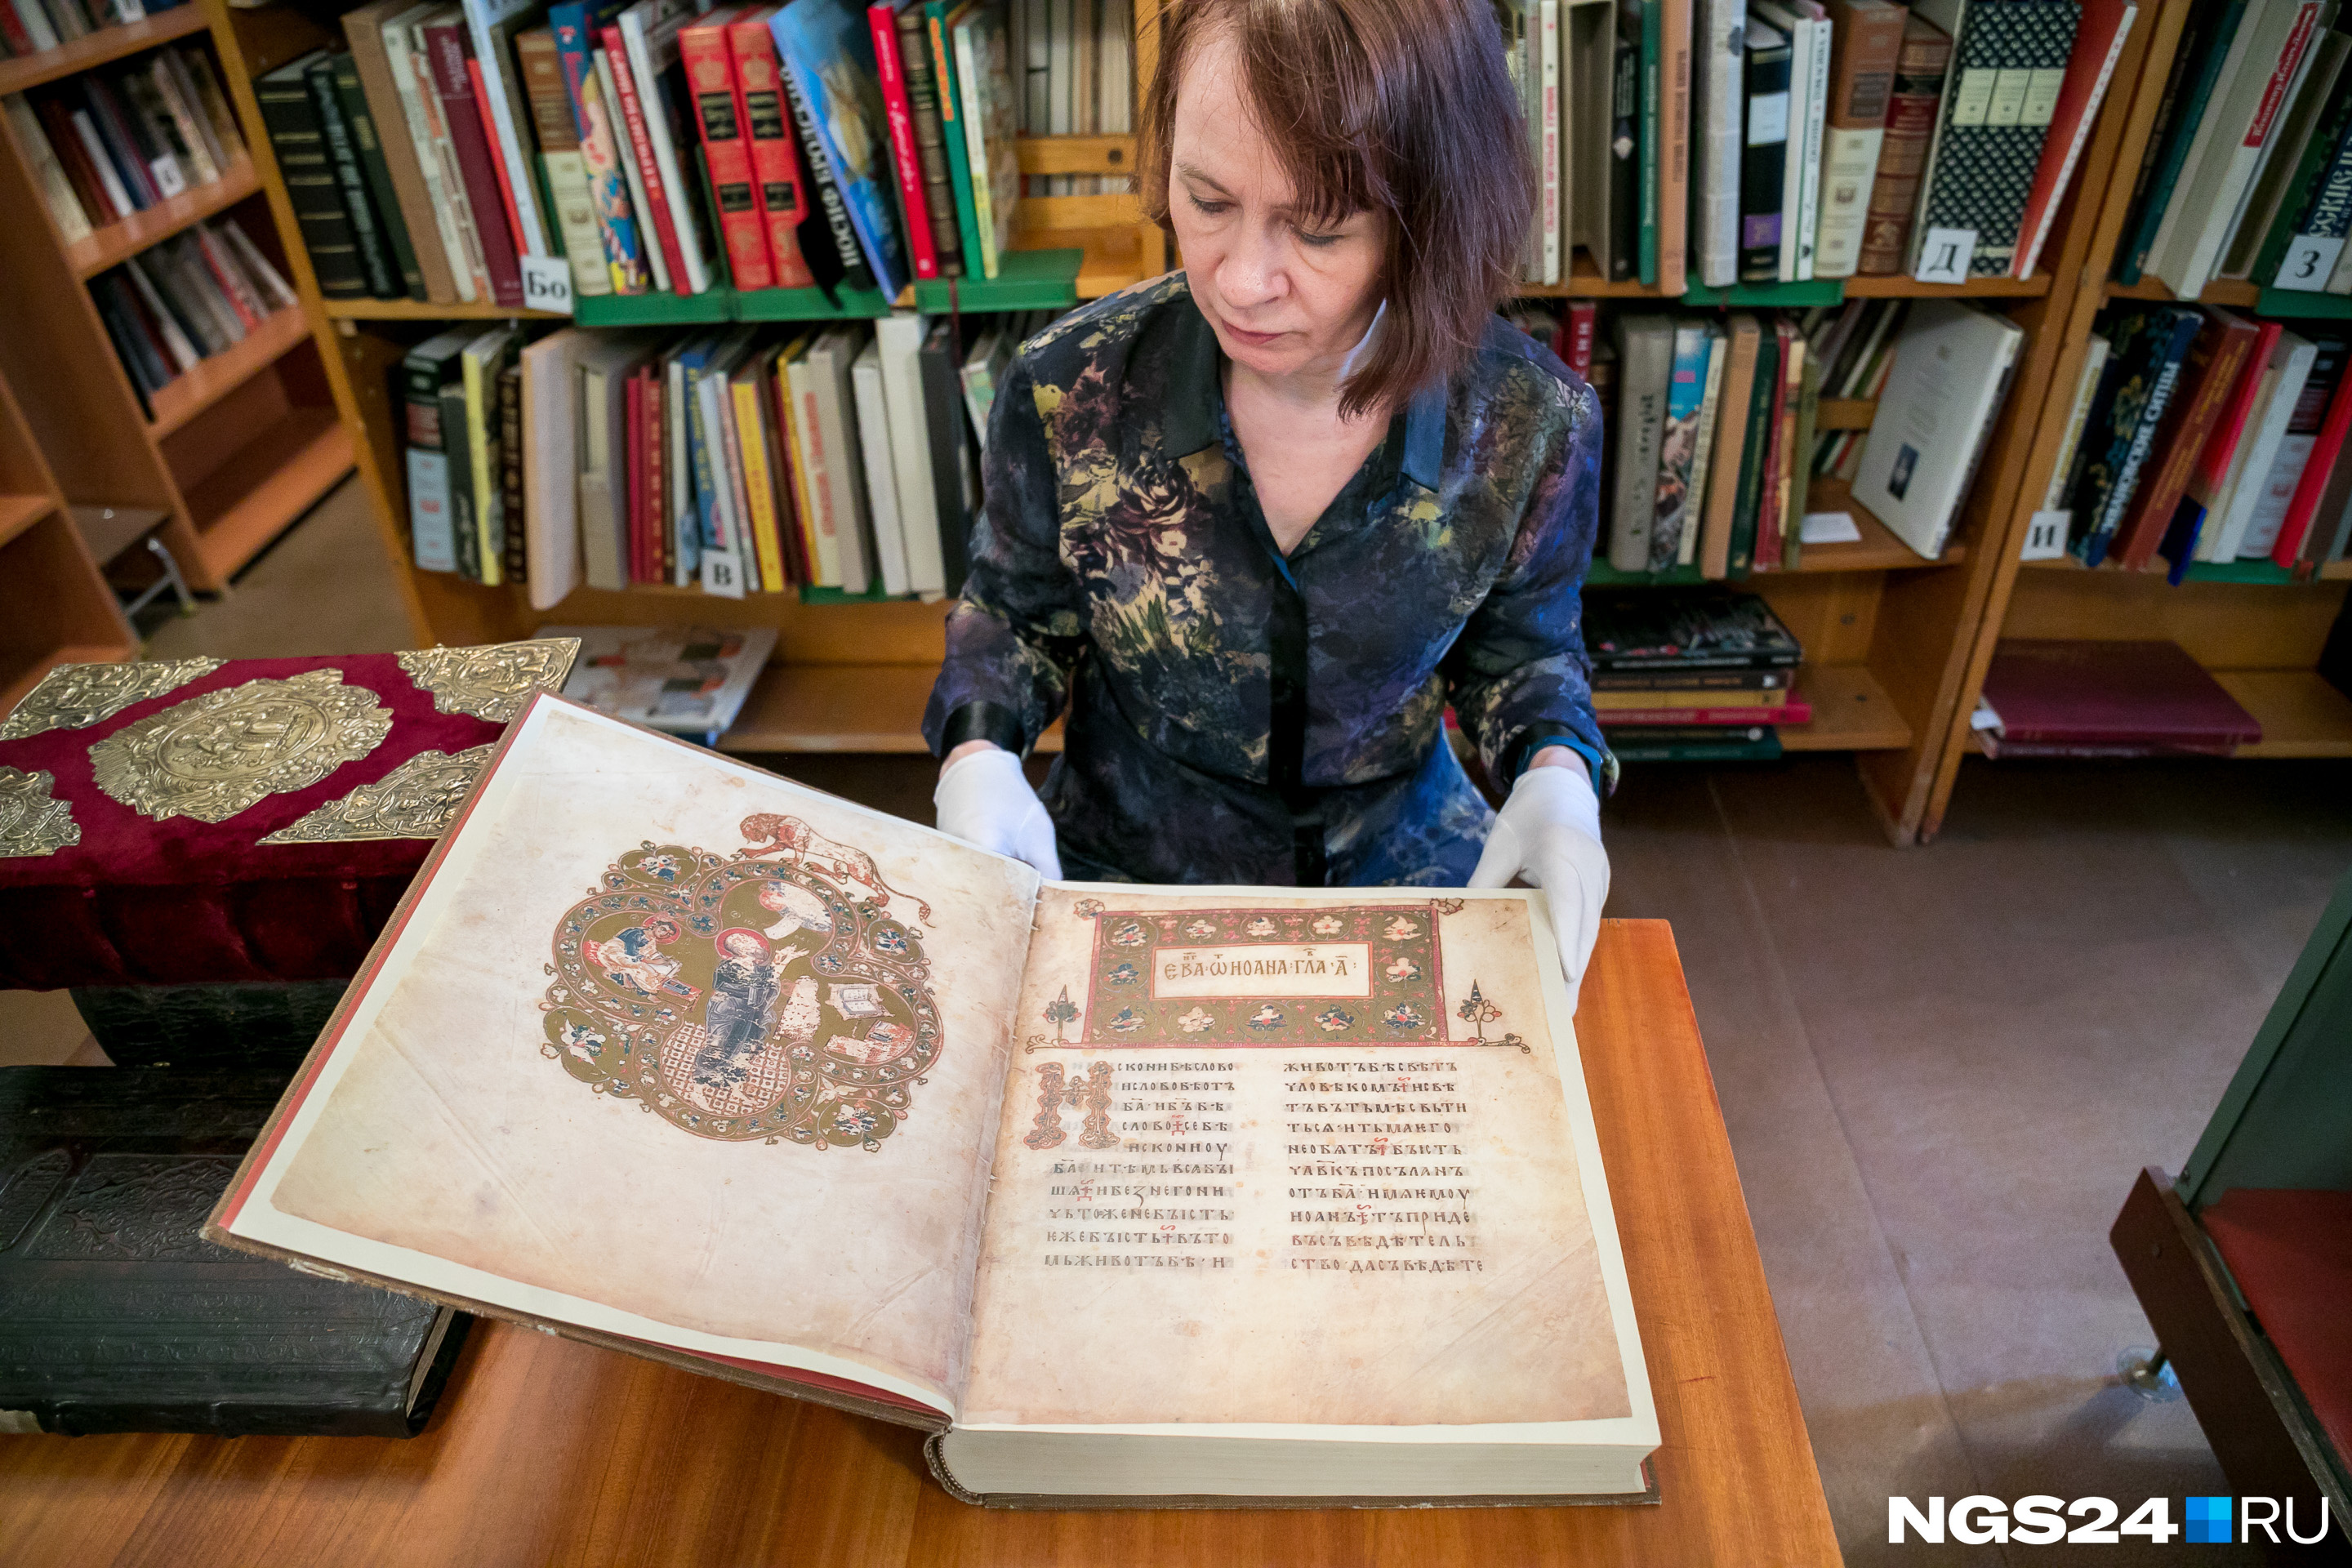 «Остромирово Евангелие» — это самая ранняя точно датированная книга на Руси. В Красноярске есть ее современная копия